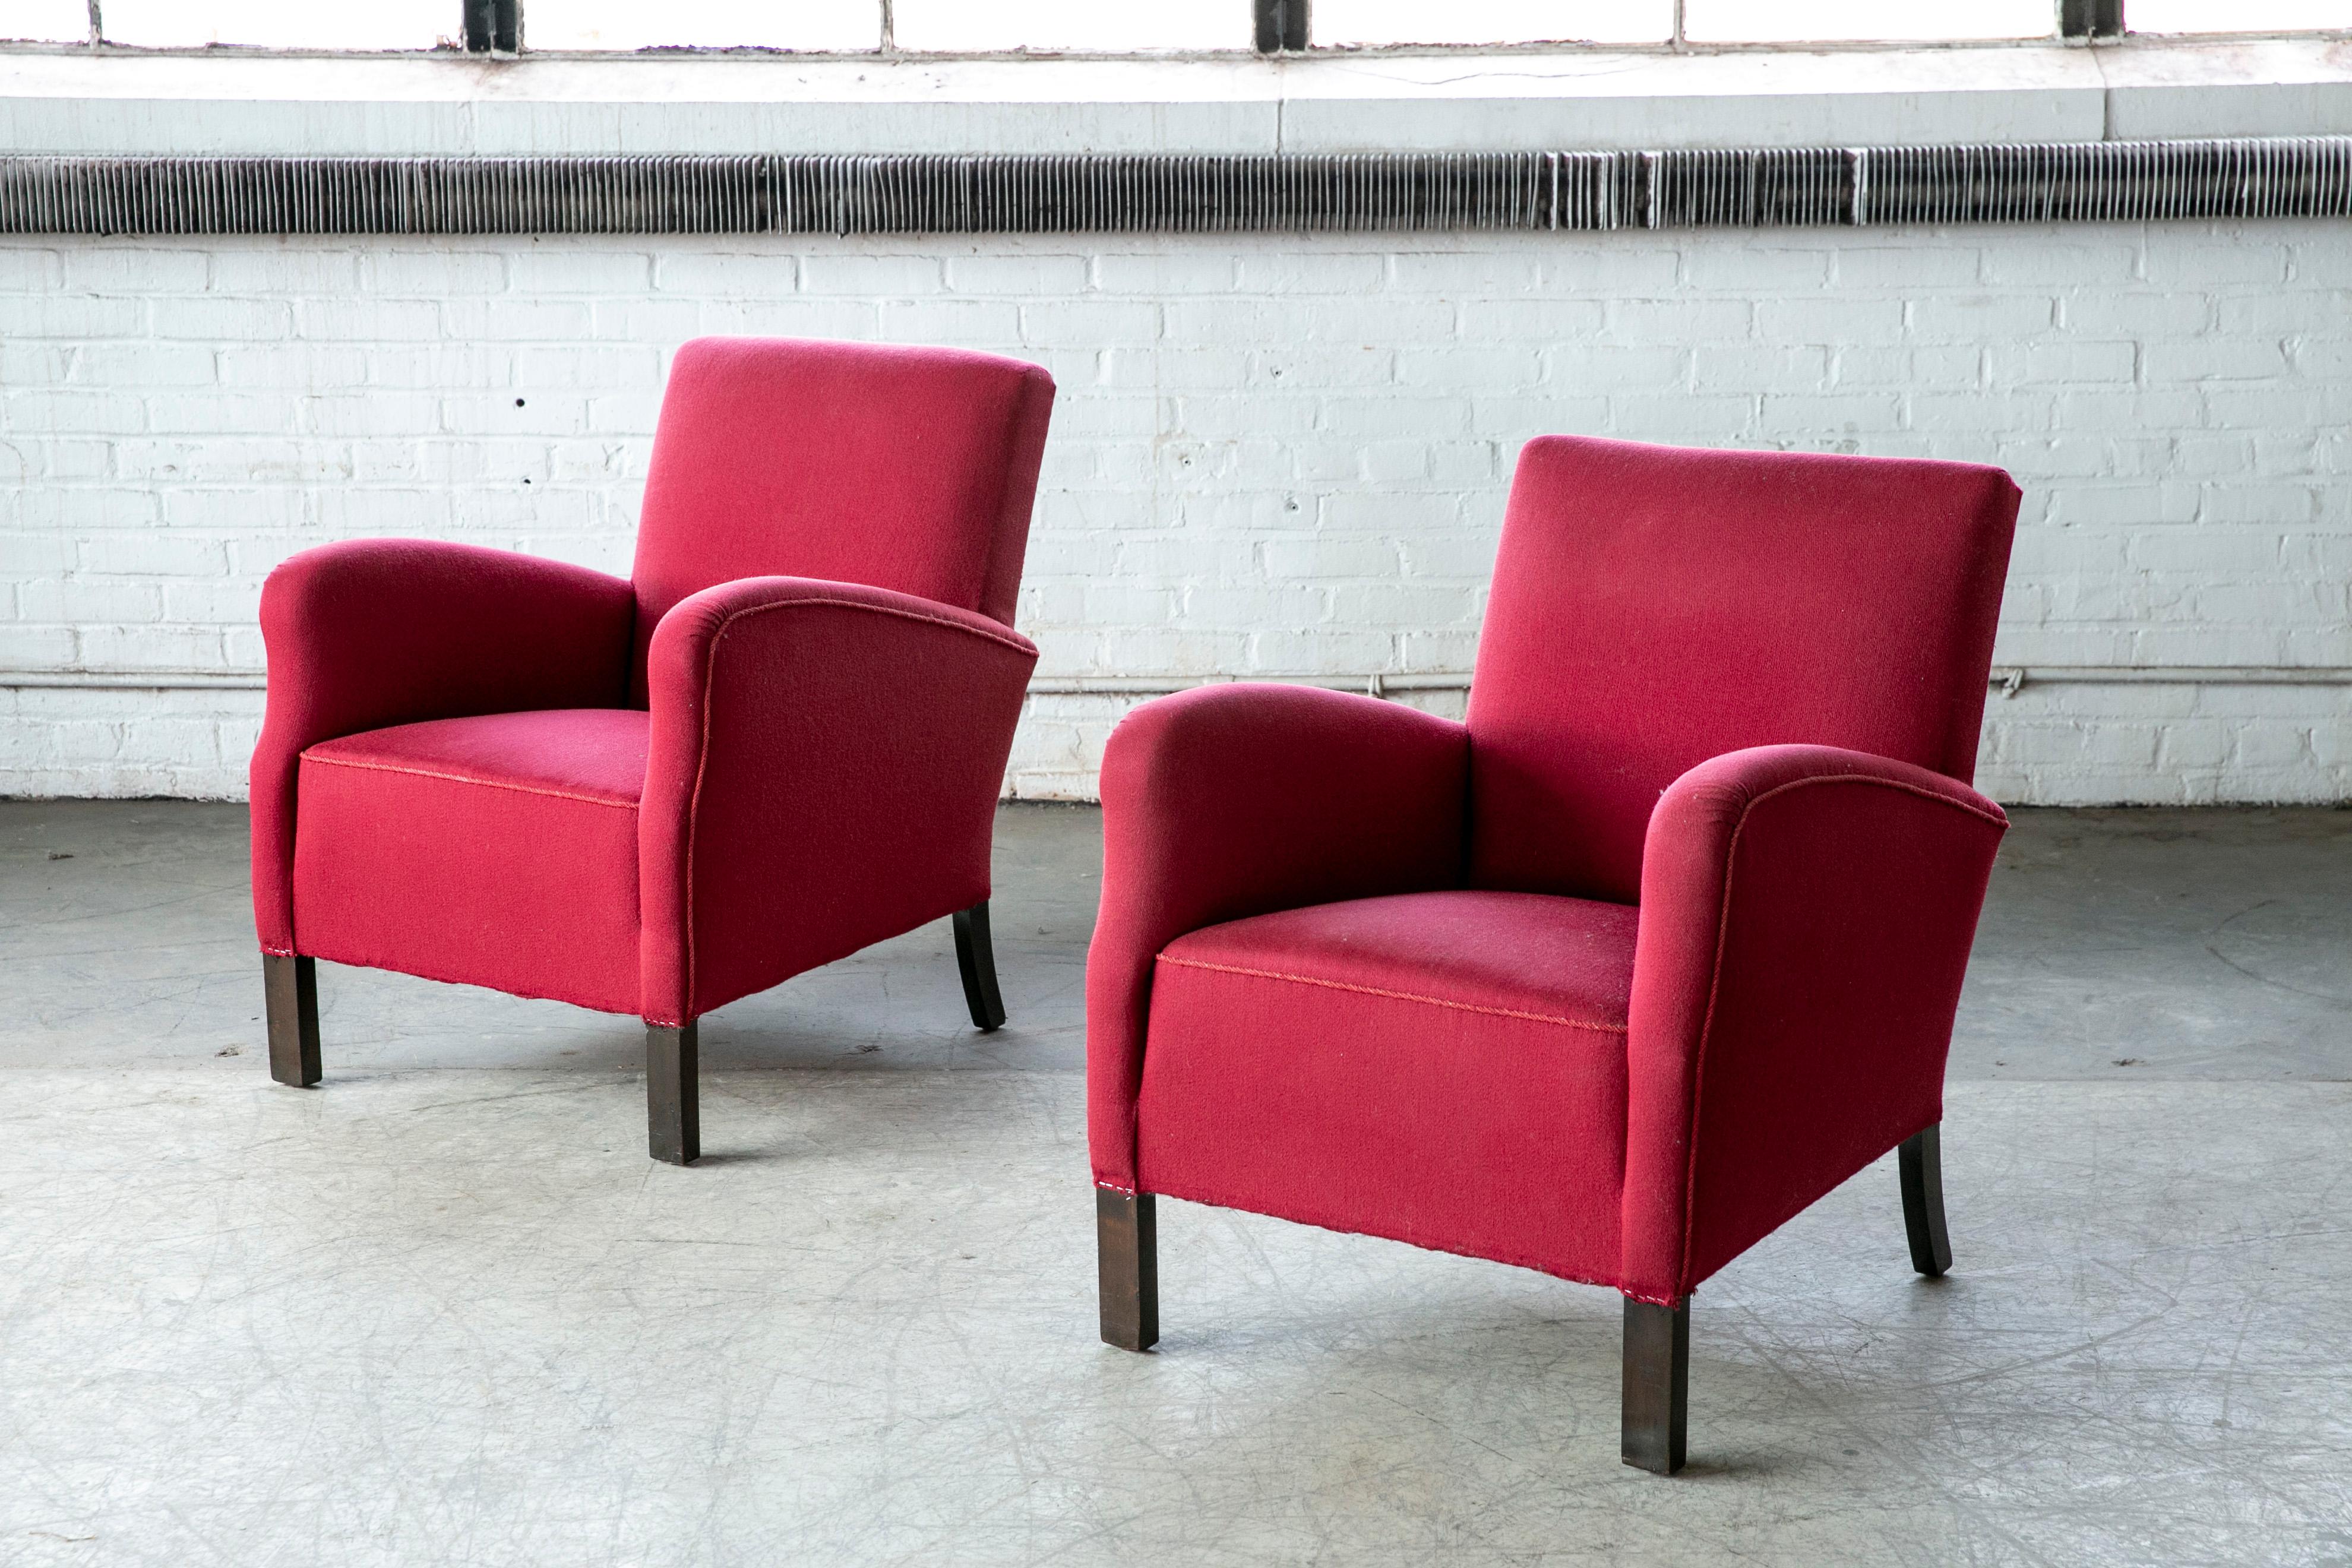 Schönes Paar dänischer Sessel aus den 1930-40er Jahren, die Fritz Hansen zugeschrieben werden. Mit ihrer ausgeprägten Form, den präzisen Linien und den harmonischen Proportionen ist sie elegant. Die vielseitige Größe eignet sich gut für die heutigen